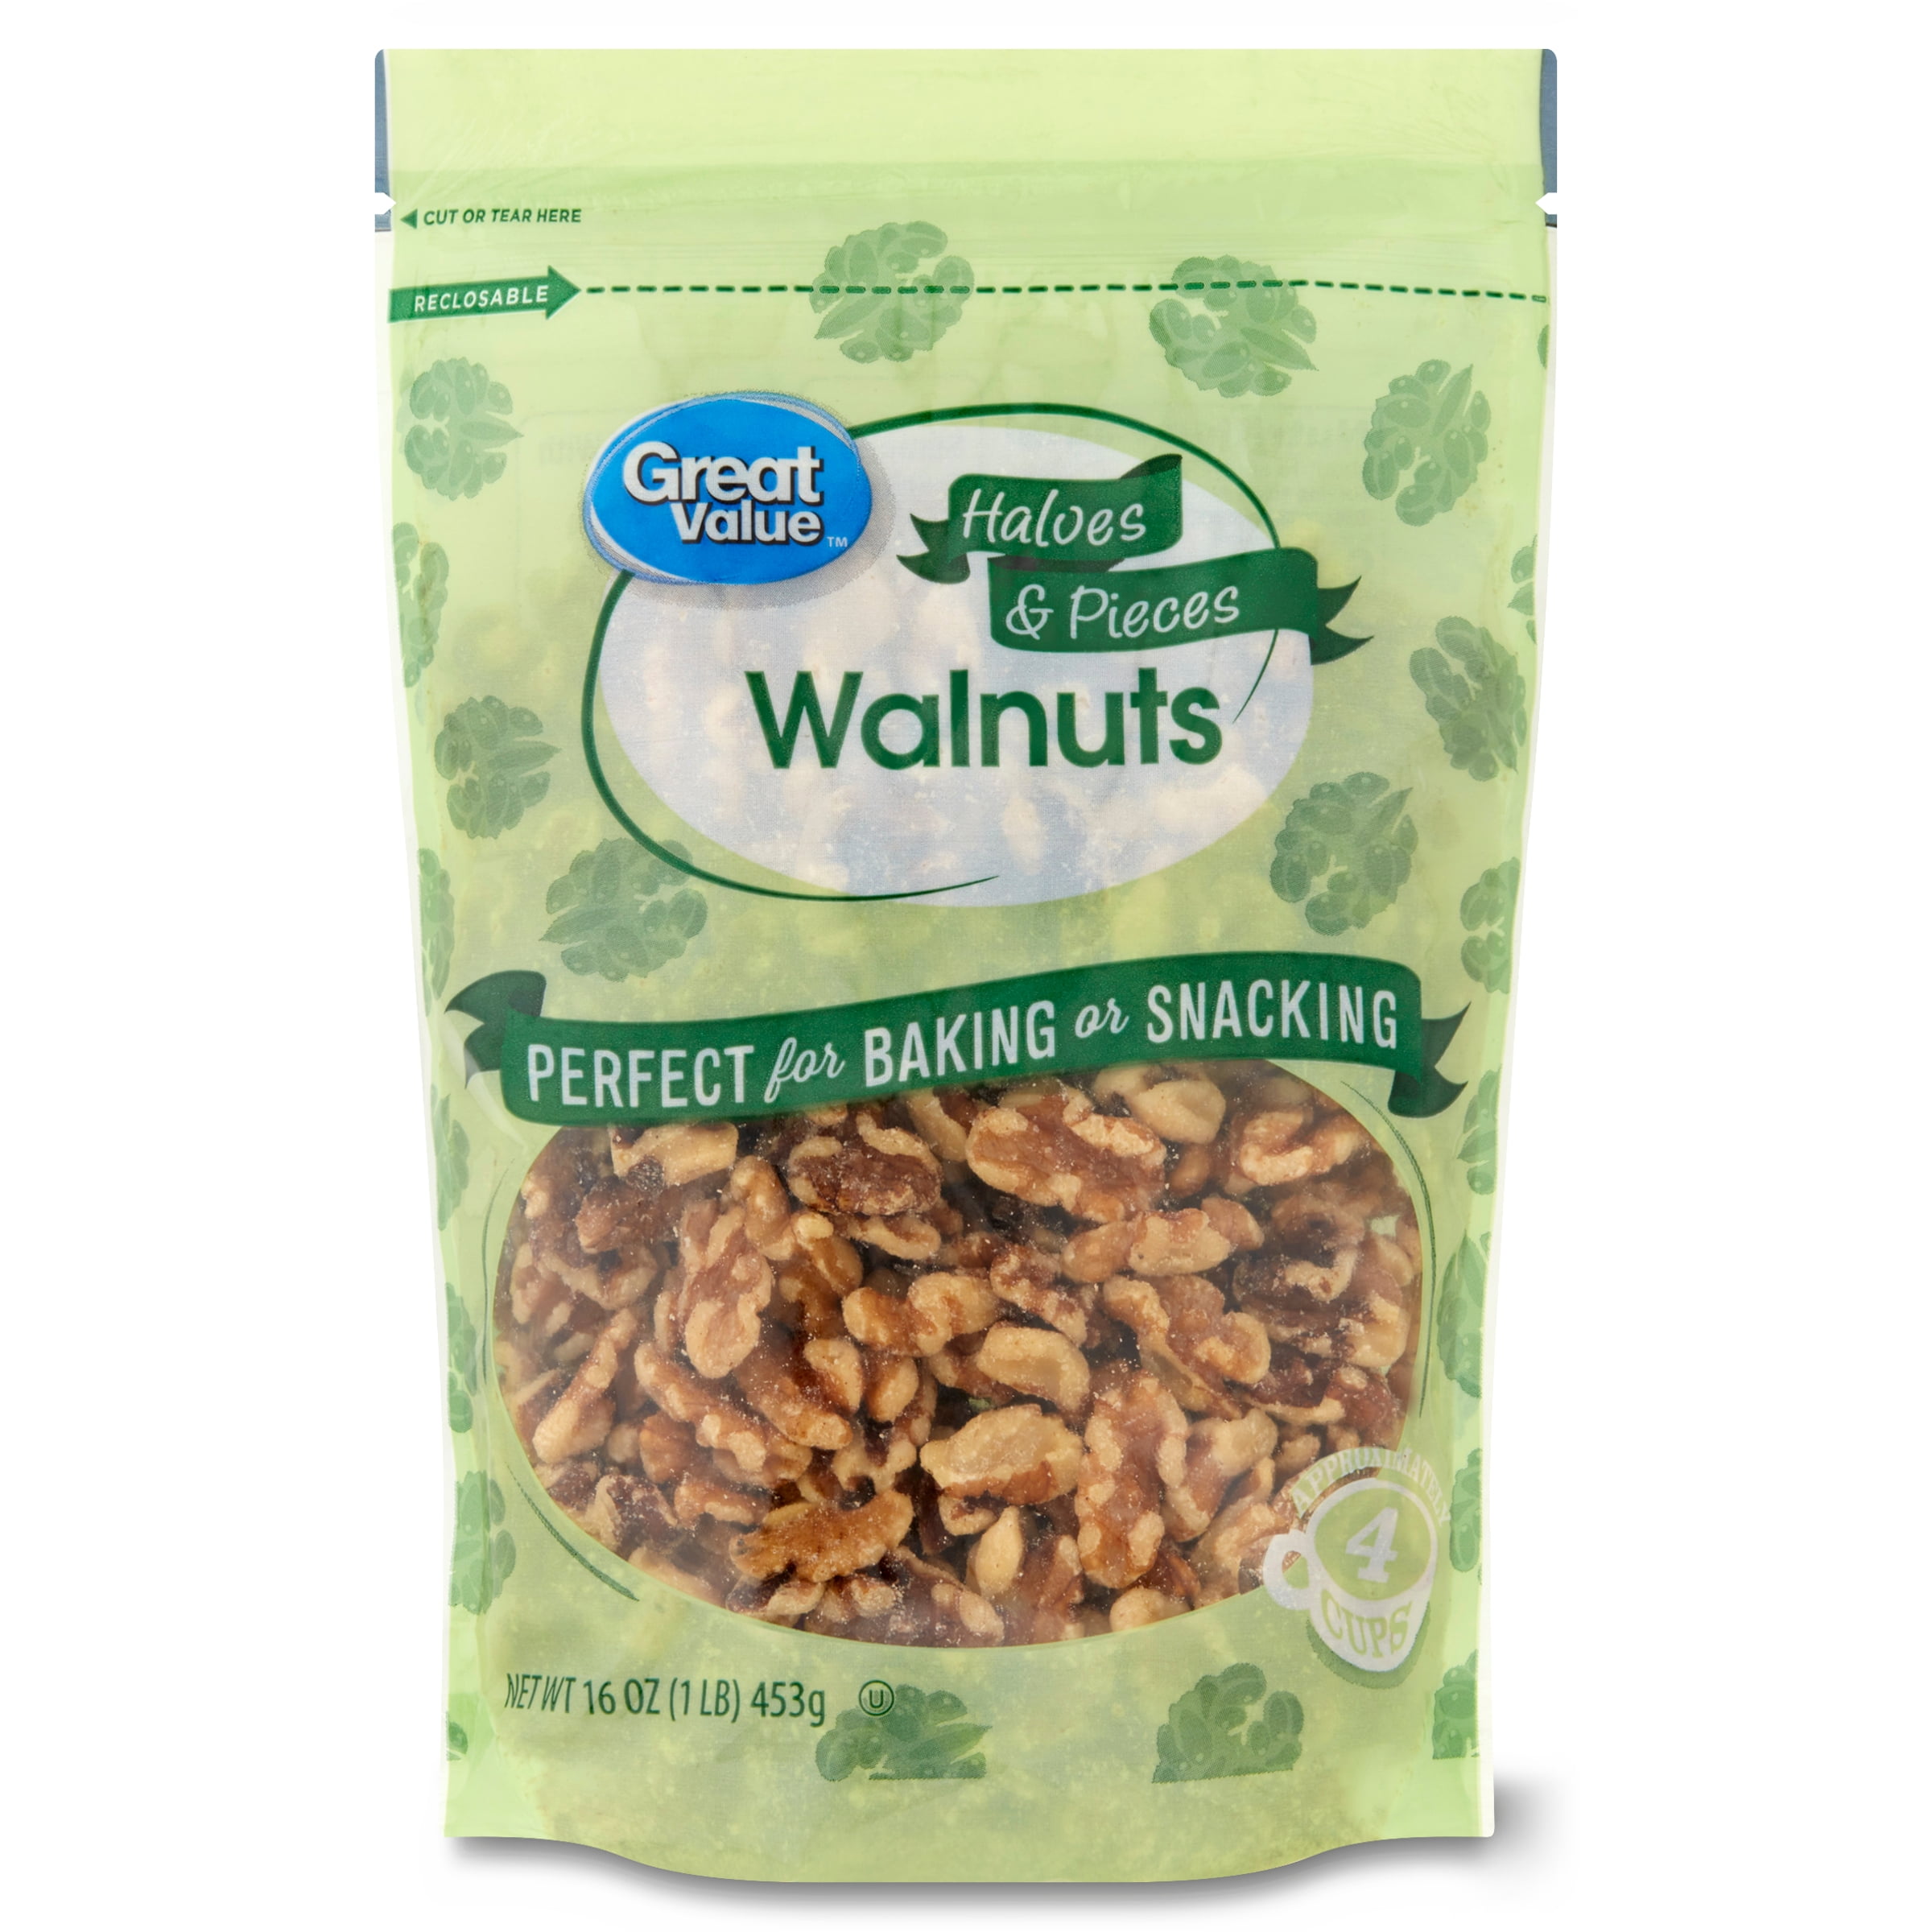 Great Value Walnuts Halves & Pieces, 16 oz